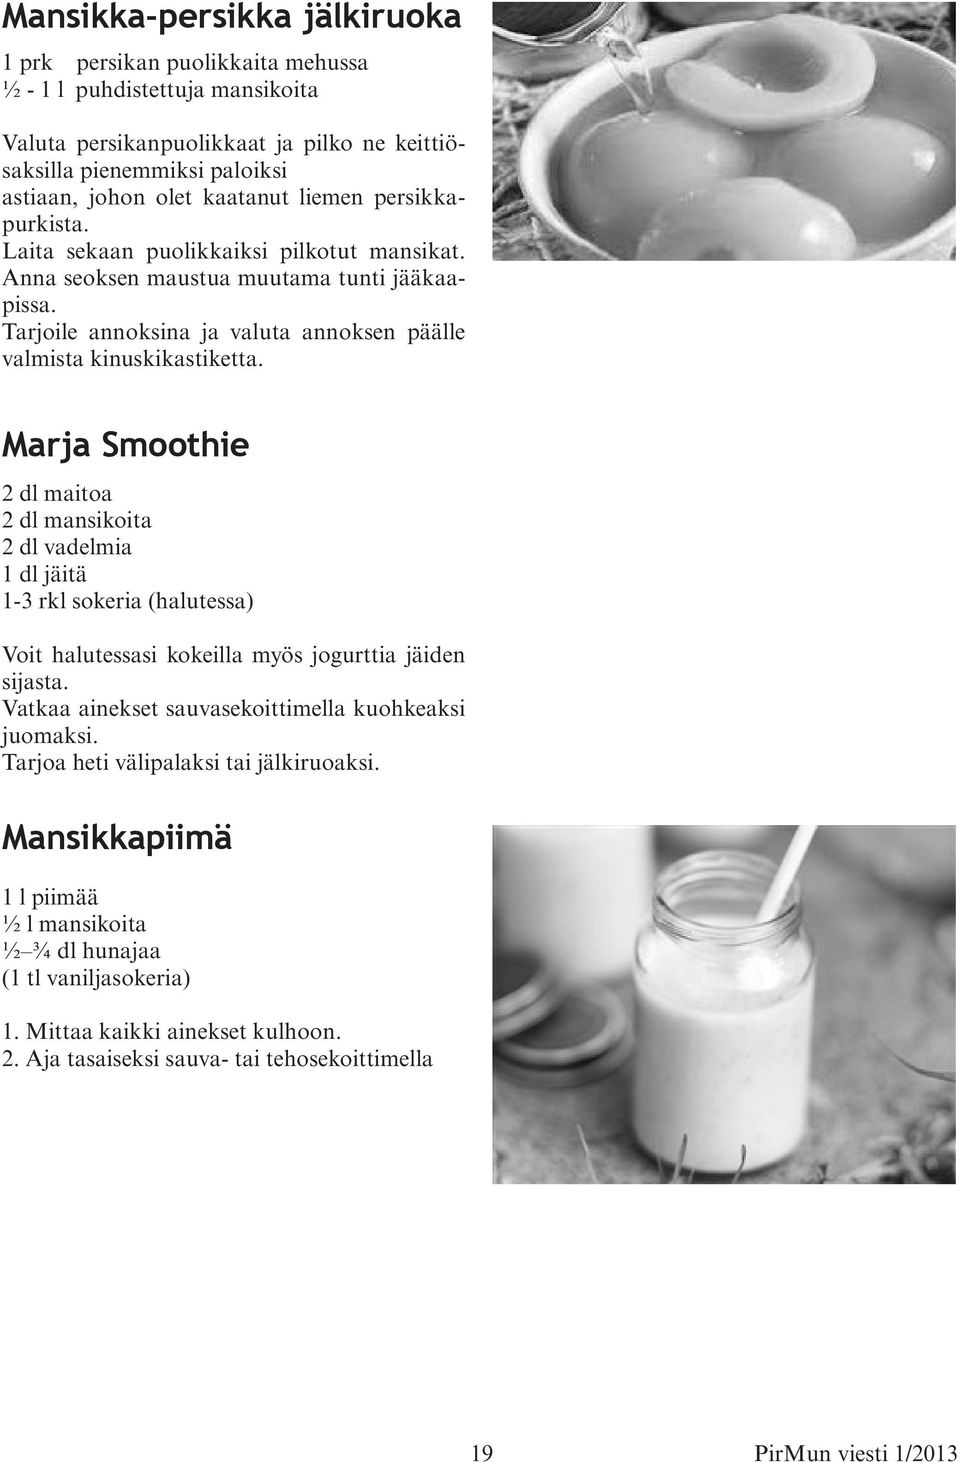 Marja Smoothie 2 dl maitoa 2 dl mansikoita 2 dl vadelmia 1 dl jäitä 1-3 rkl sokeria (halutessa) Voit halutessasi kokeilla myös jogurttia jäiden sijasta.